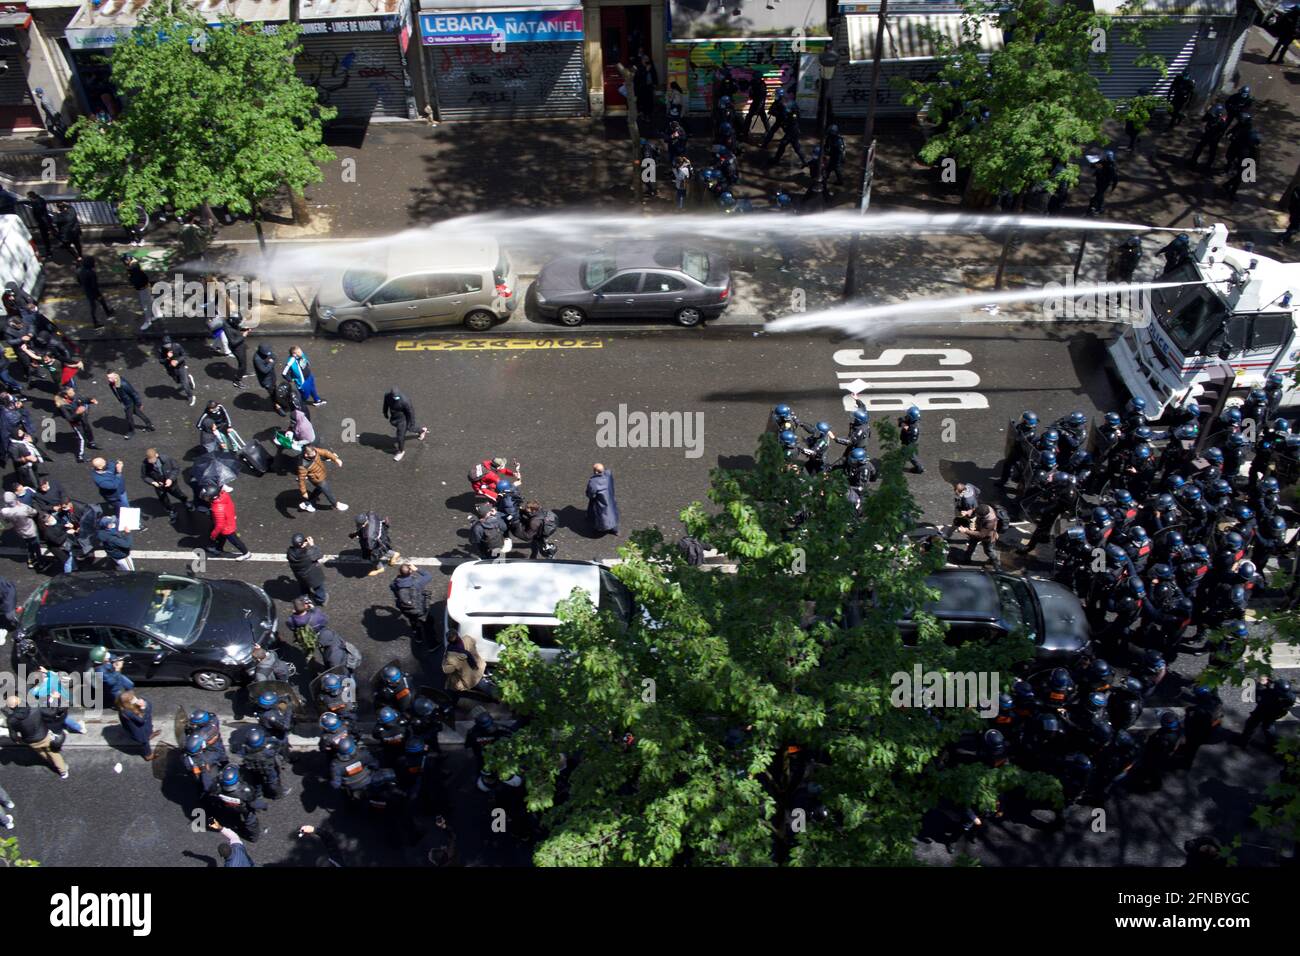 La policía dispara cañones de agua para dispersar a los partidarios de Palestina reunidos en manifestación pro-palestina, Boulevard Barbès, París, Francia, 15th de mayo, 2021 Foto de stock